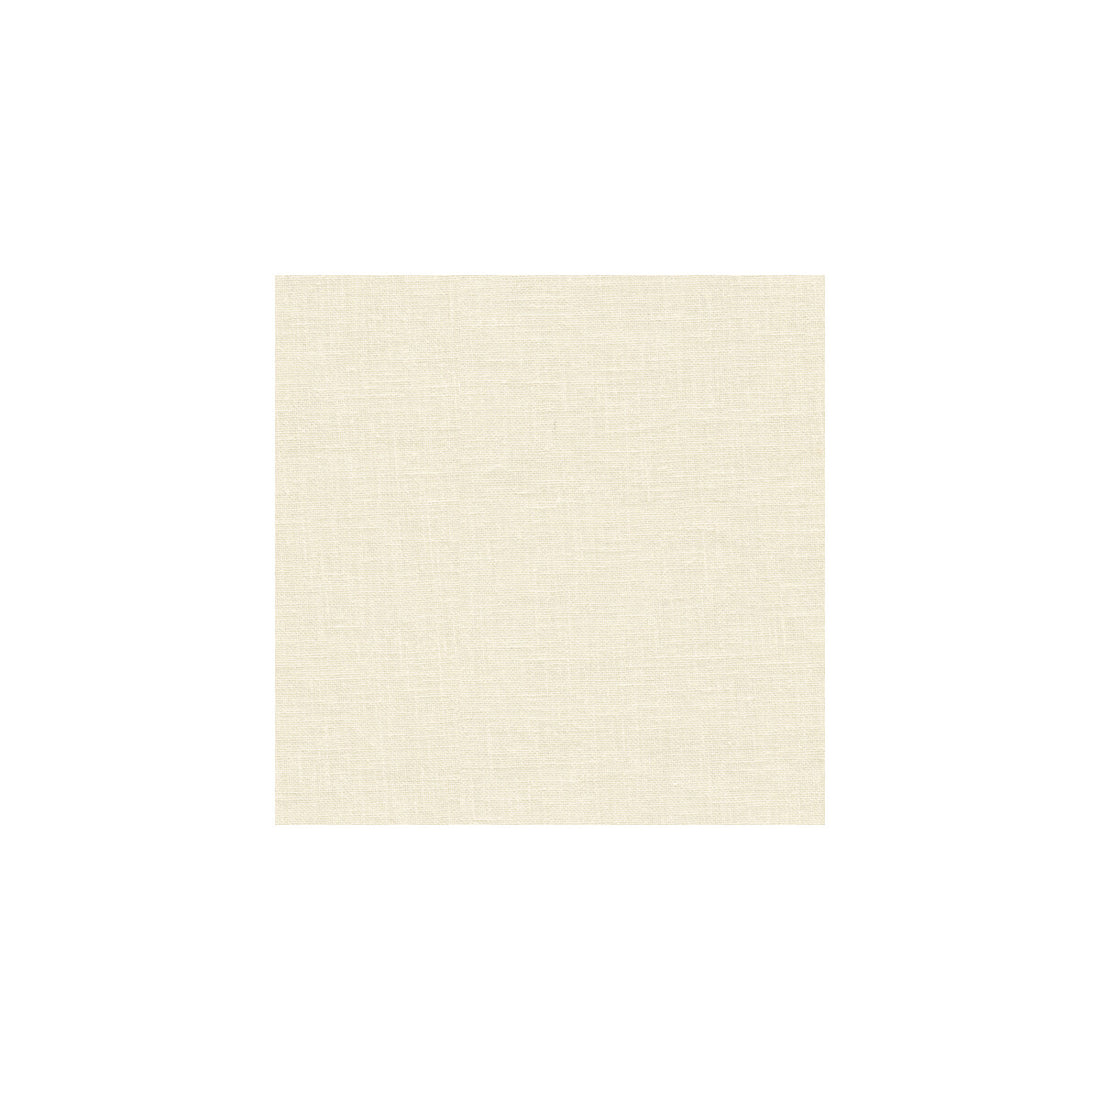 Kravet Basics fabric in 3783-1 color - pattern 3783.1.0 - by Kravet Basics